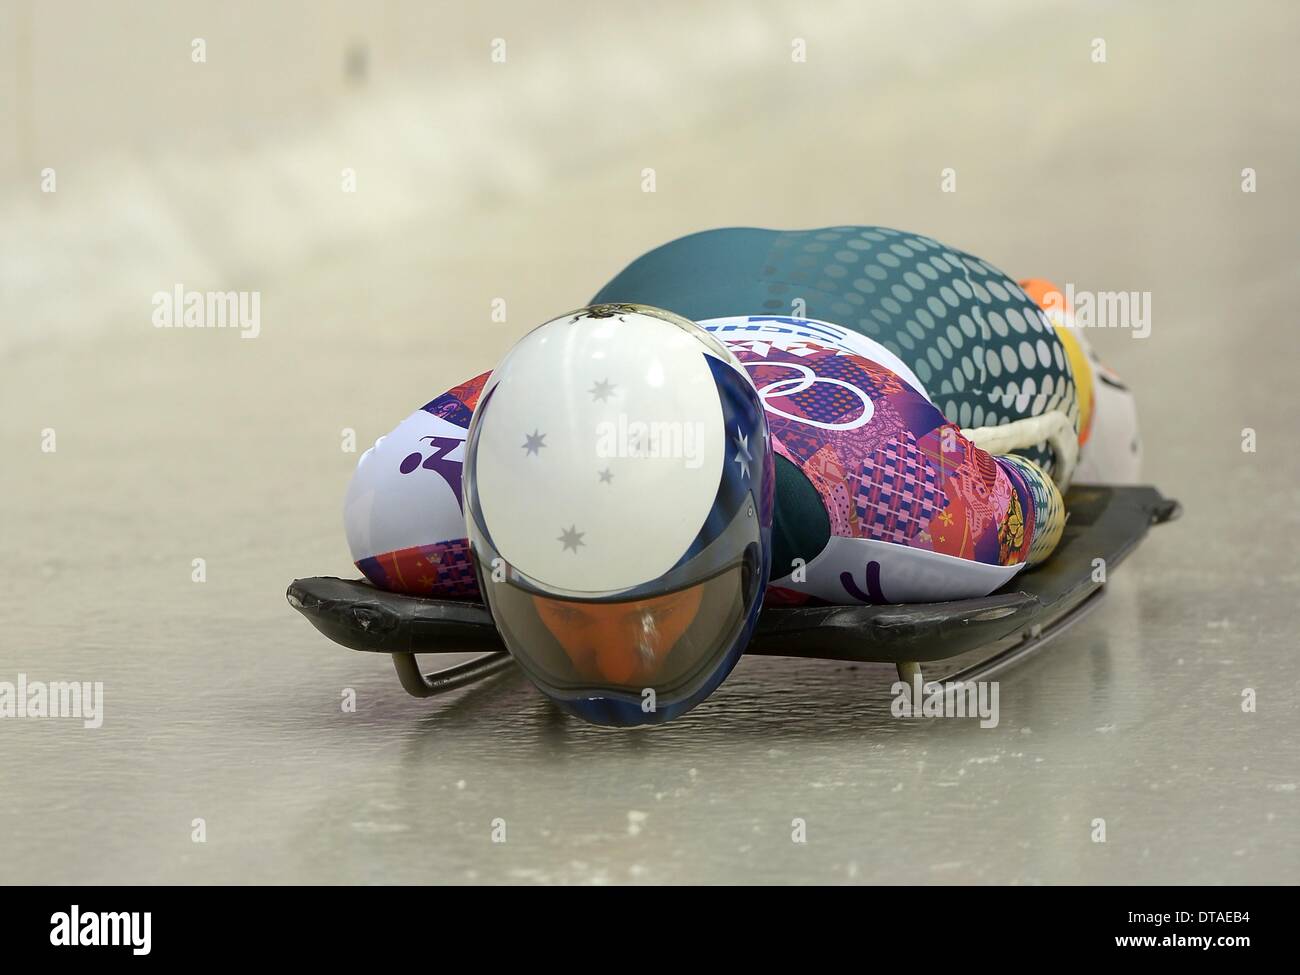 Winterspiele in Sotschi 2014: Lucy Chaffer (AUS). Womens Skelett - Sanki sliding Centre - Sotschi - Russland - 13.02.2014 Credit: Sport In Bilder/Alamy Live News Stockfoto